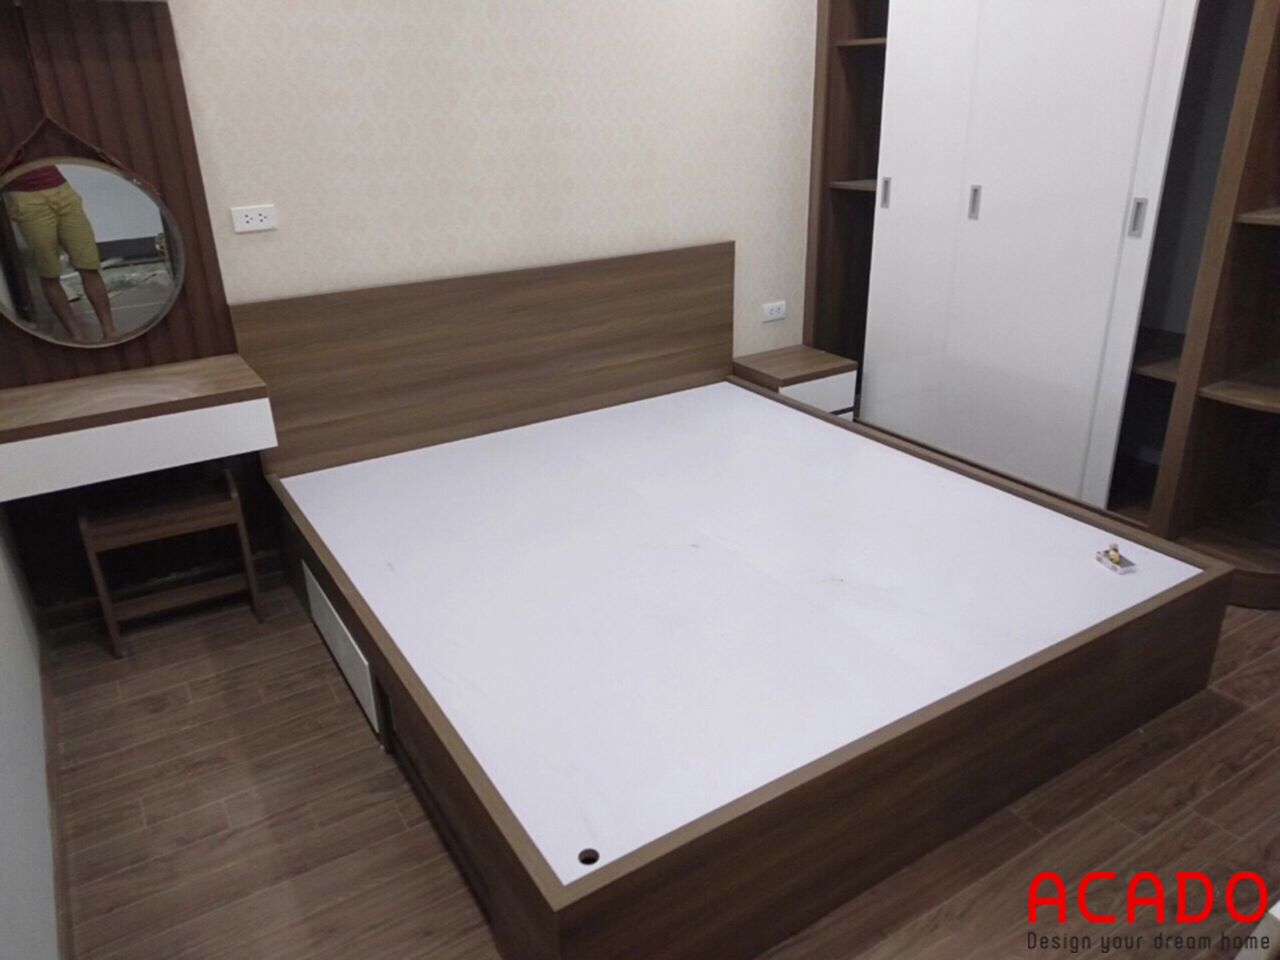 Giường ngủ gỗ công nghiệp thiết kế đơn giản, hiện đại